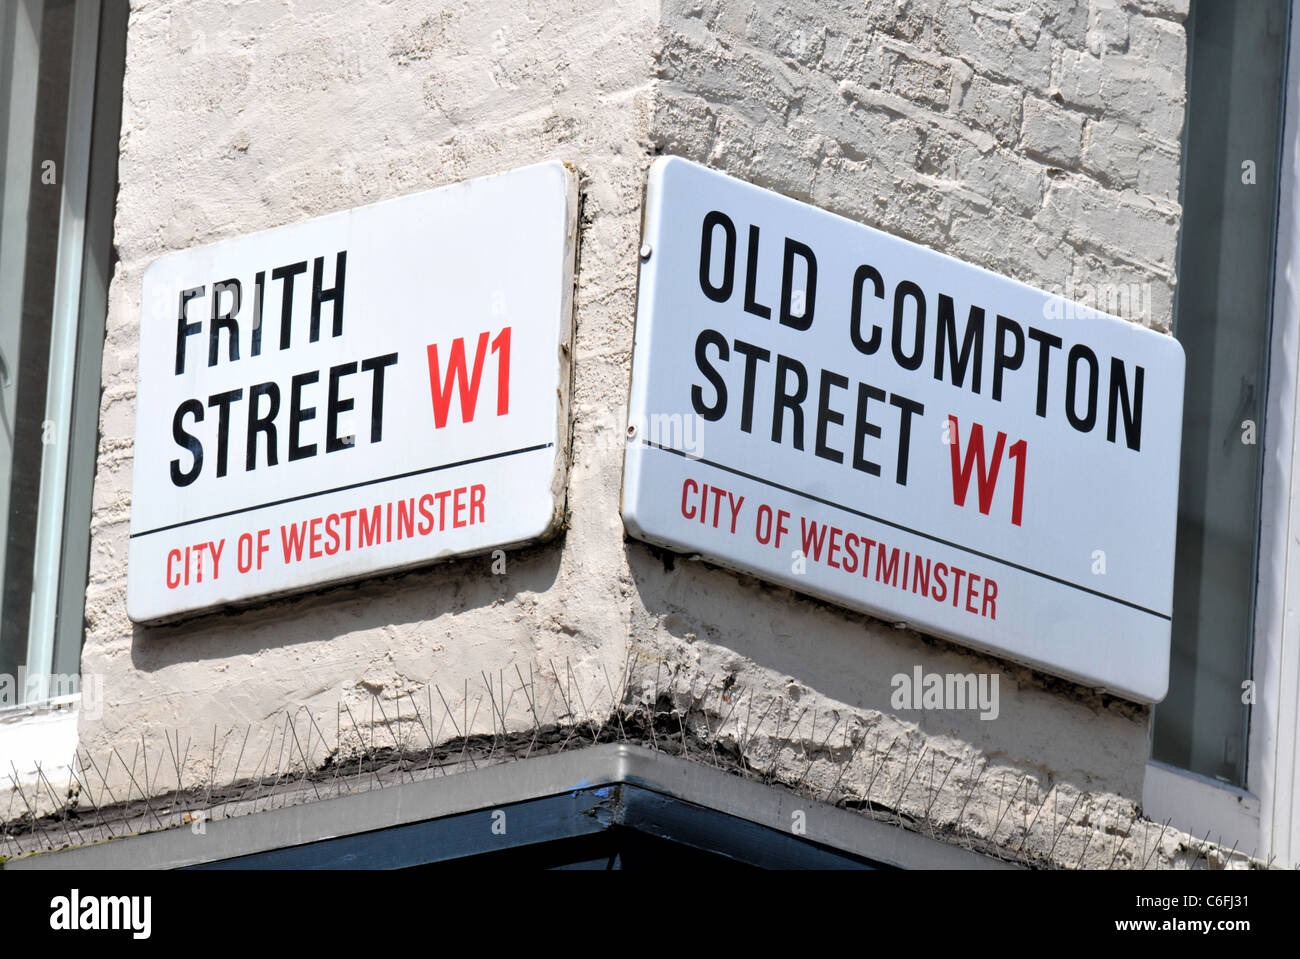 Frith Street e Old Compton Street segni, Soho, Londra, Gran Bretagna, Regno Unito Foto Stock